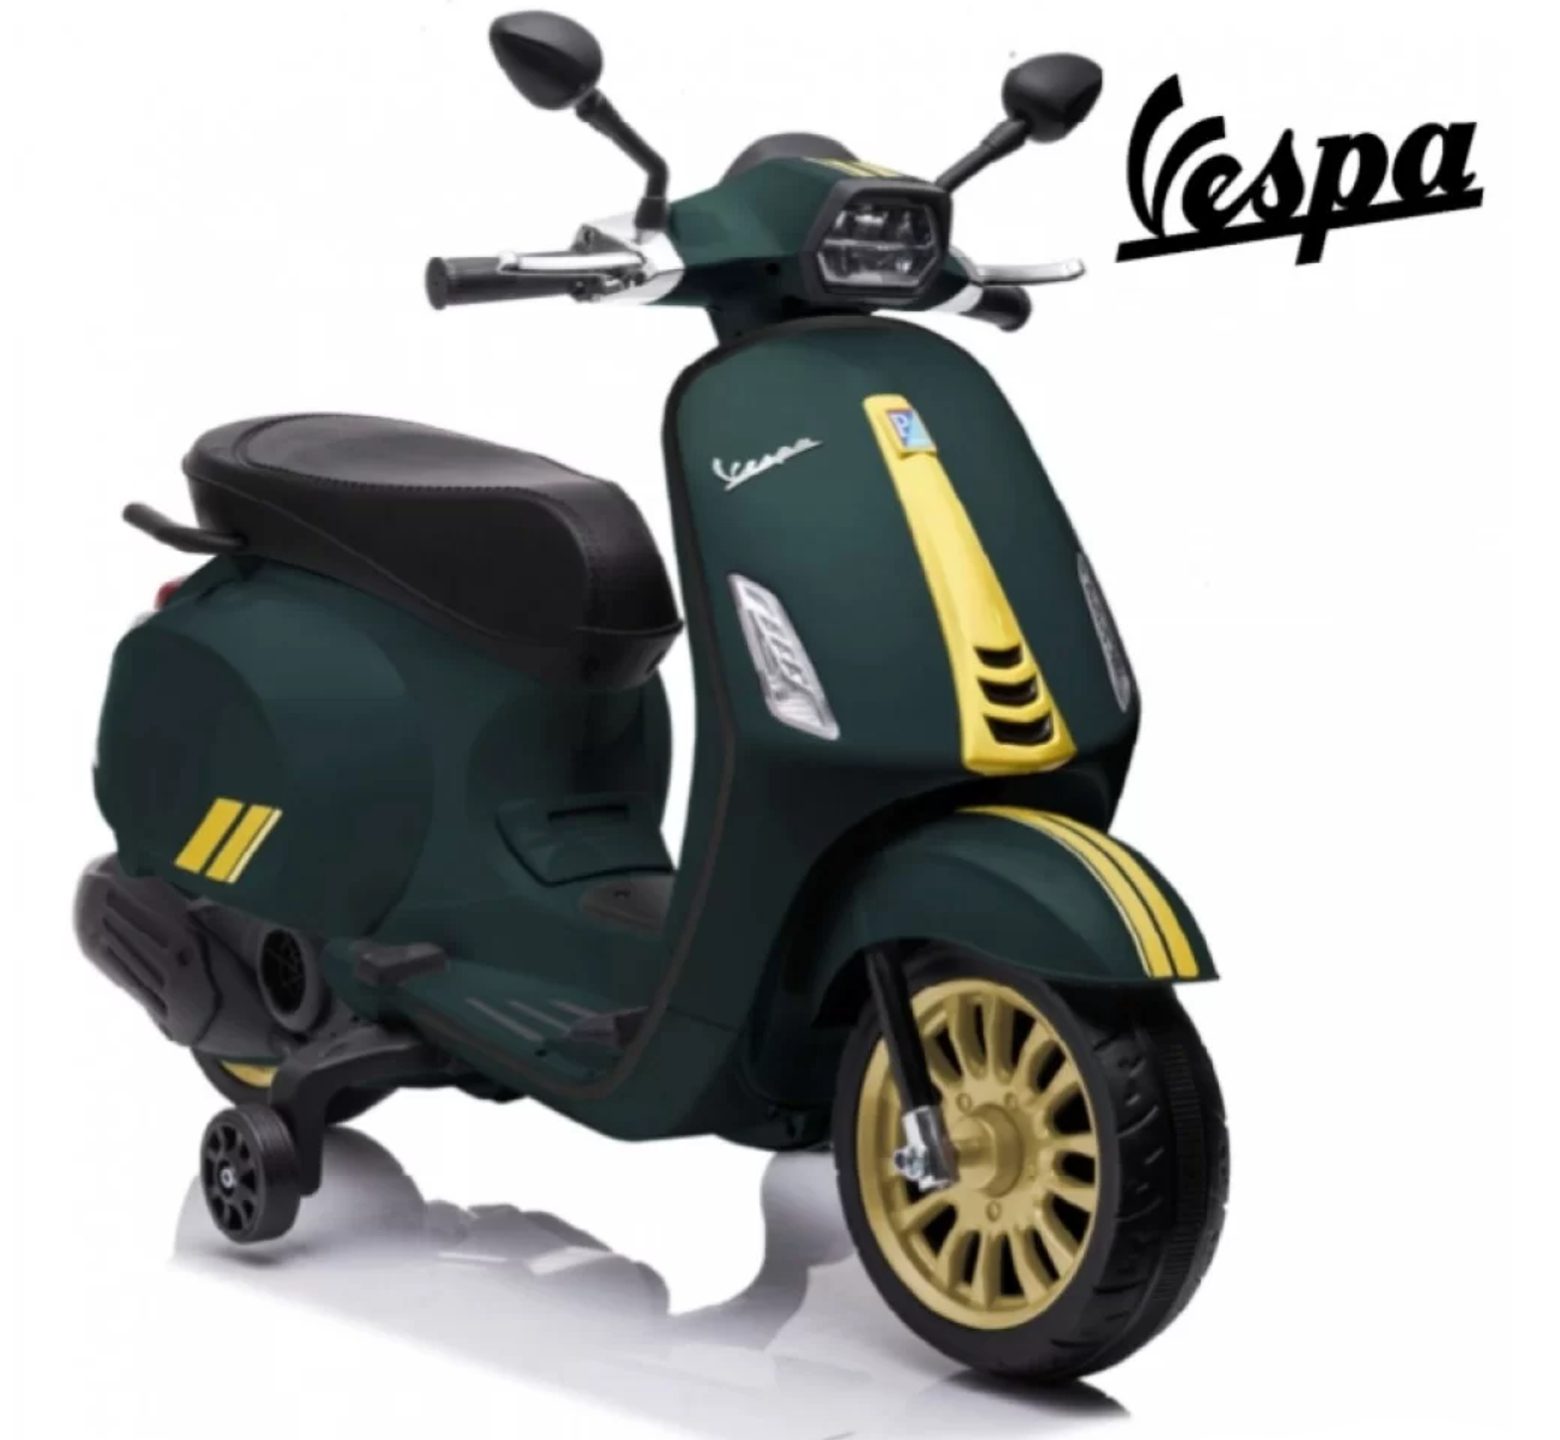 Ηλεκτροκίνητη Παιδική Μηχανή Licensed Vespa Piaggio 12V σε Πράσινο Χρώμα